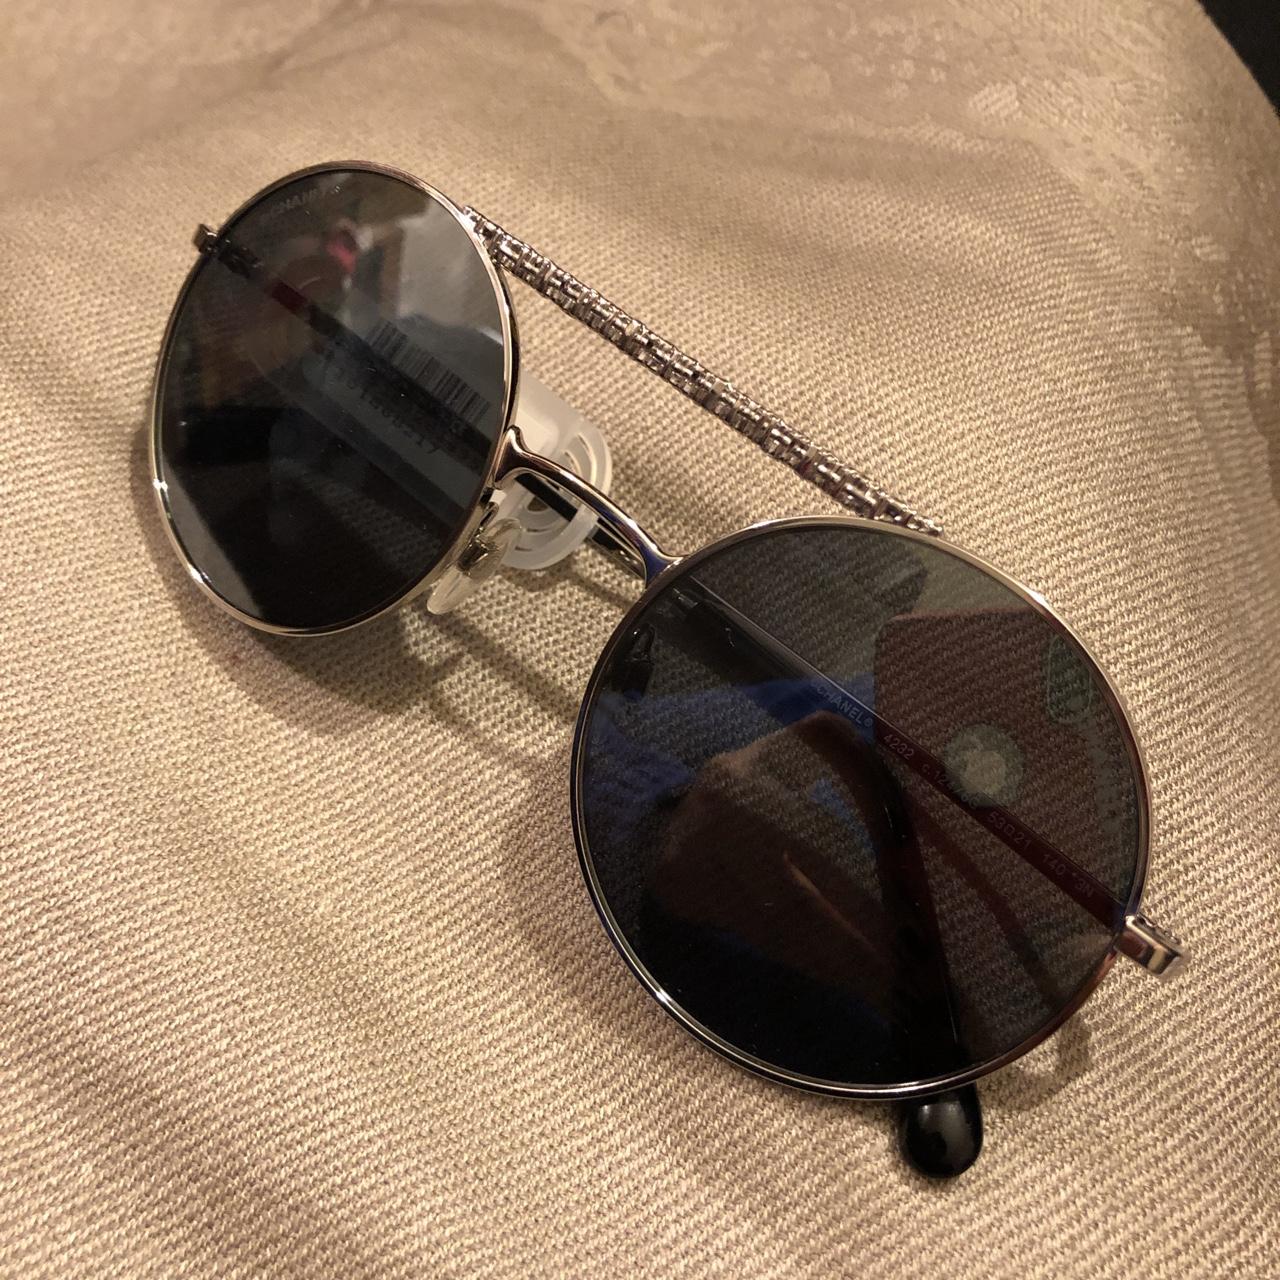 Luxottica Chanel Silver color sunglasses, Like new